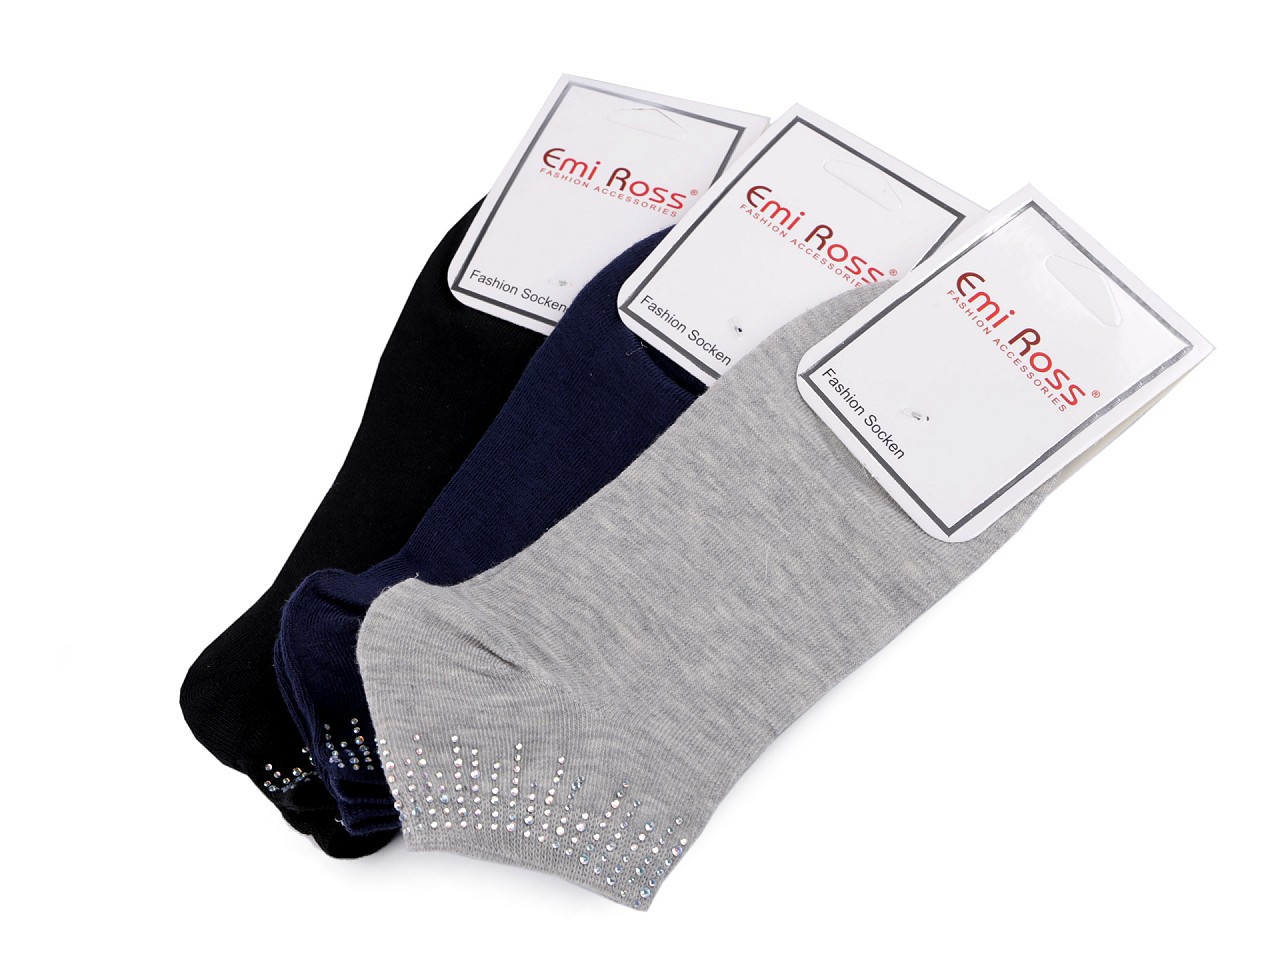 Dámské bavlněné ponožky kotníkové s kamínky Emi Ross, barva 27 (vel. 35-38) mix